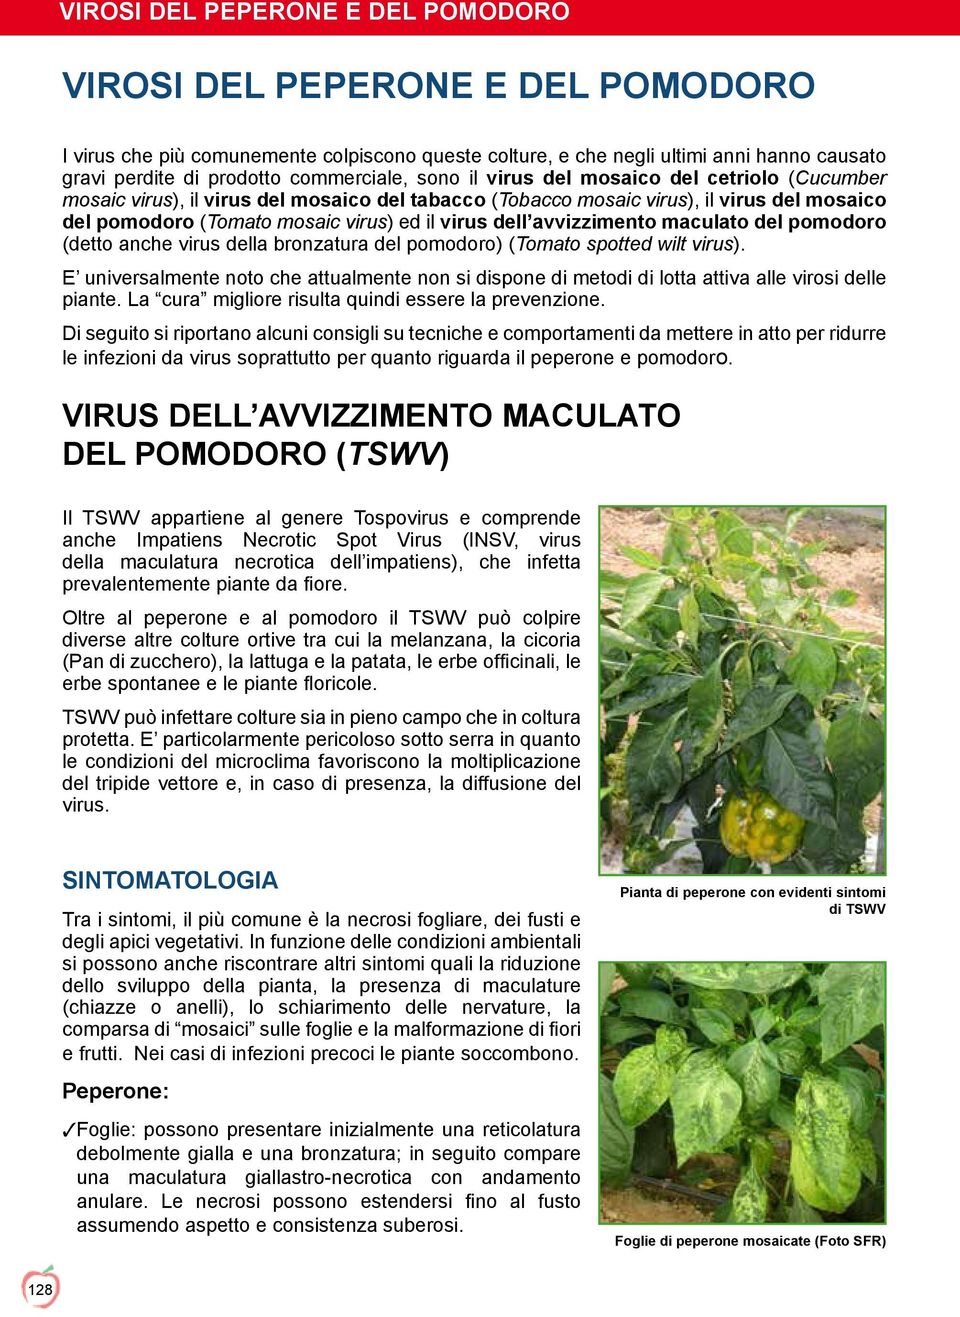 (detto anche virus della bronzatura del pomodoro) (Tomato spotted wilt virus). E universalmente noto che attualmente non si dispone di metodi di lotta attiva alle virosi delle piante.